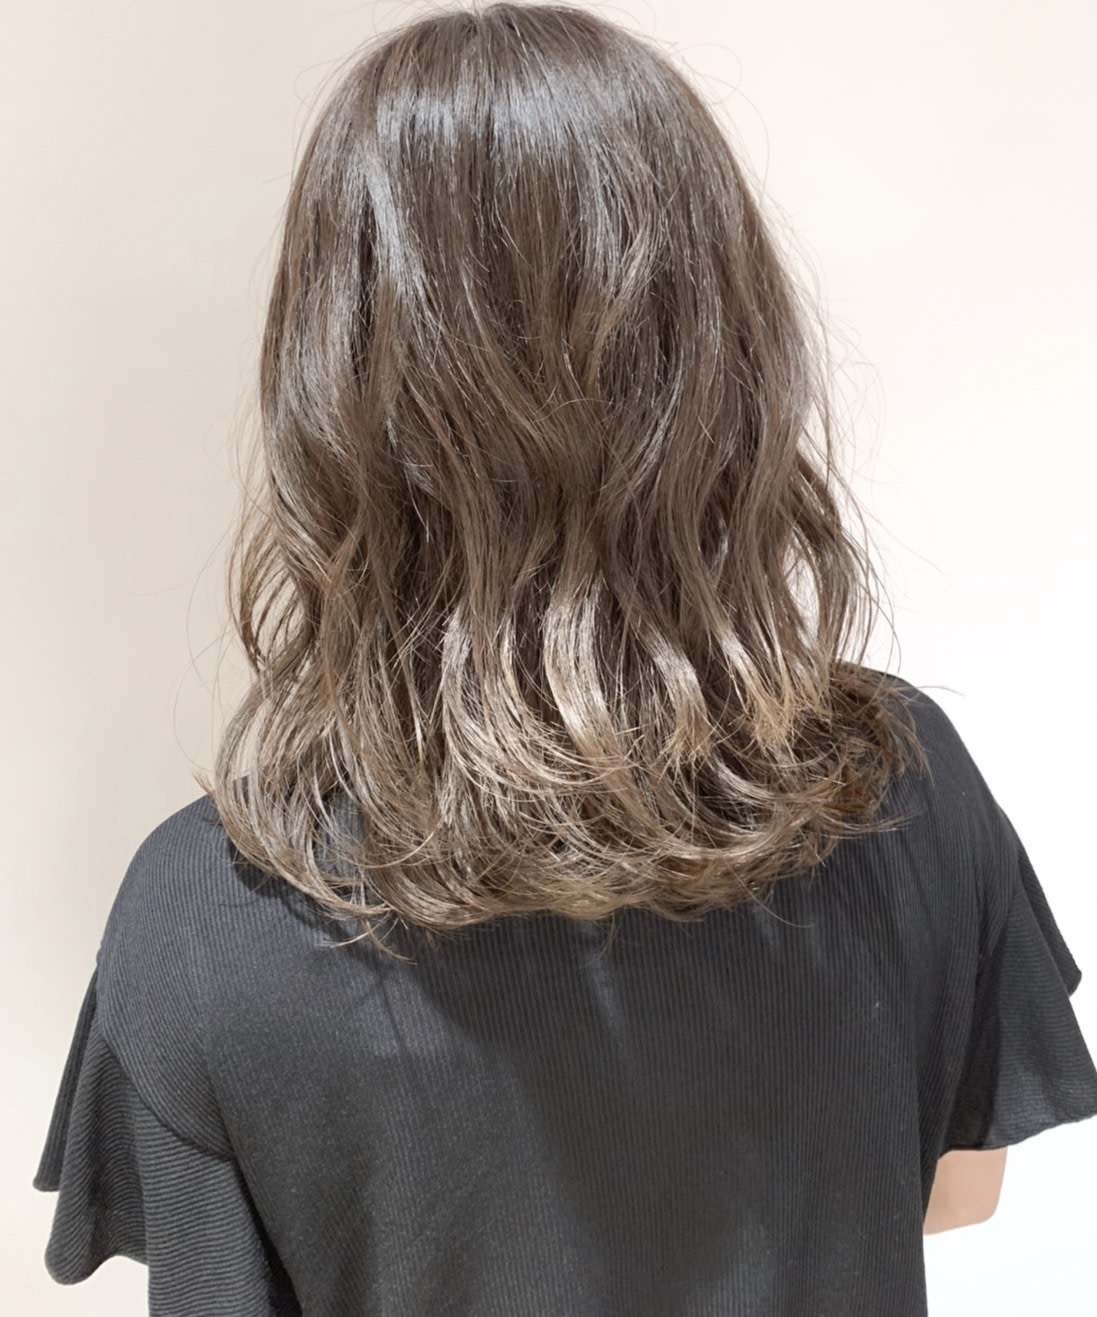 hair design filo【ヘア デザイン フィーロ】のスタイル紹介。透明感あるミルクティー ベージュ